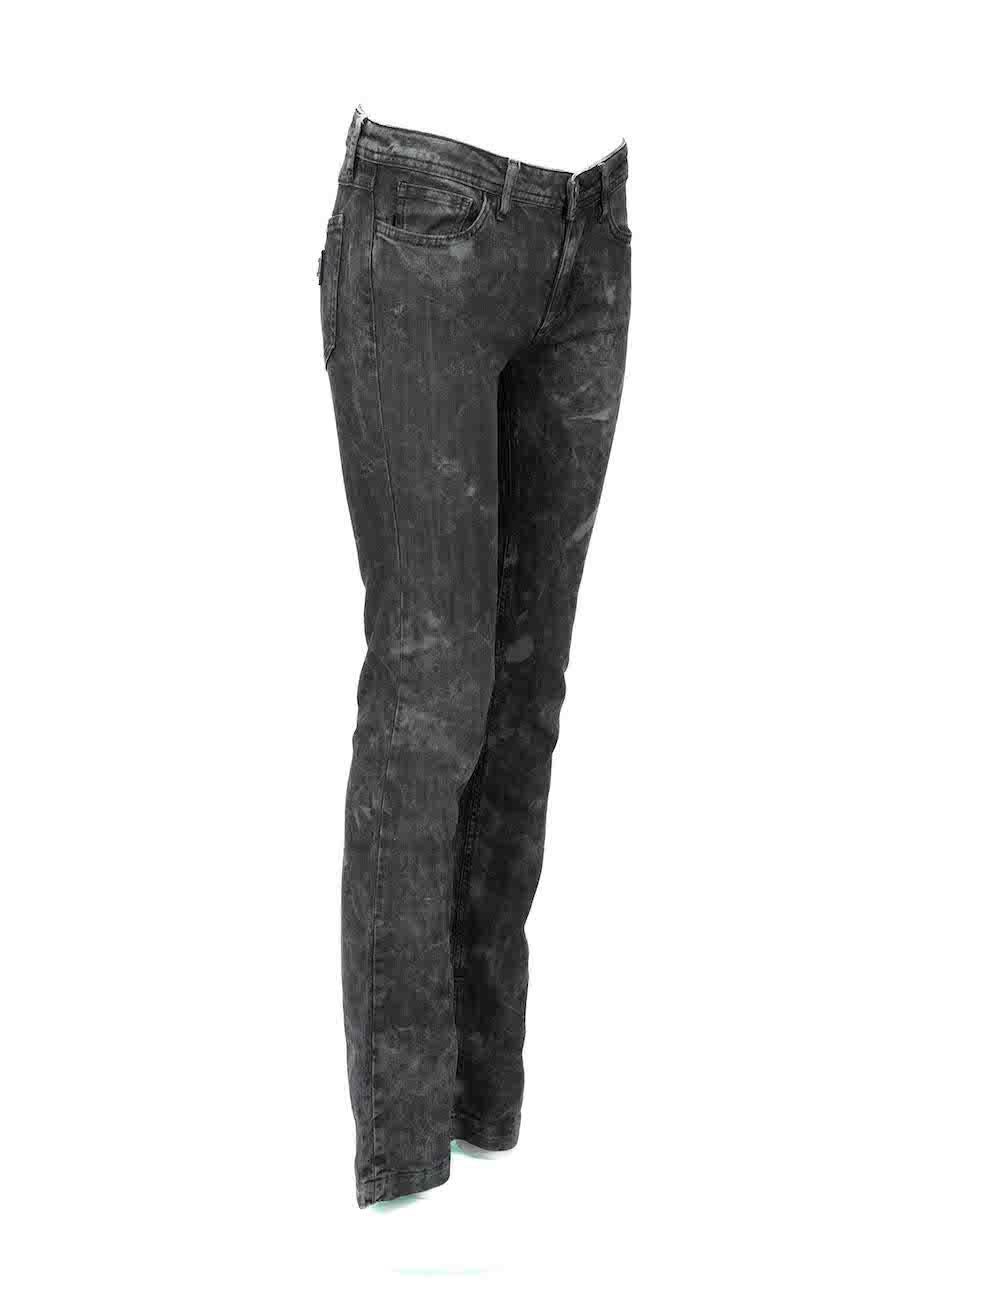 L'ÉTAT est très bon. Il n'y a pratiquement pas d'usure visible du jean sur cet article de revente d'occasion du créateur Dolce & Gabbana. Veuillez noter que le ternissement de la plaque métallique sur la poche arrière droite est intentionnel.
